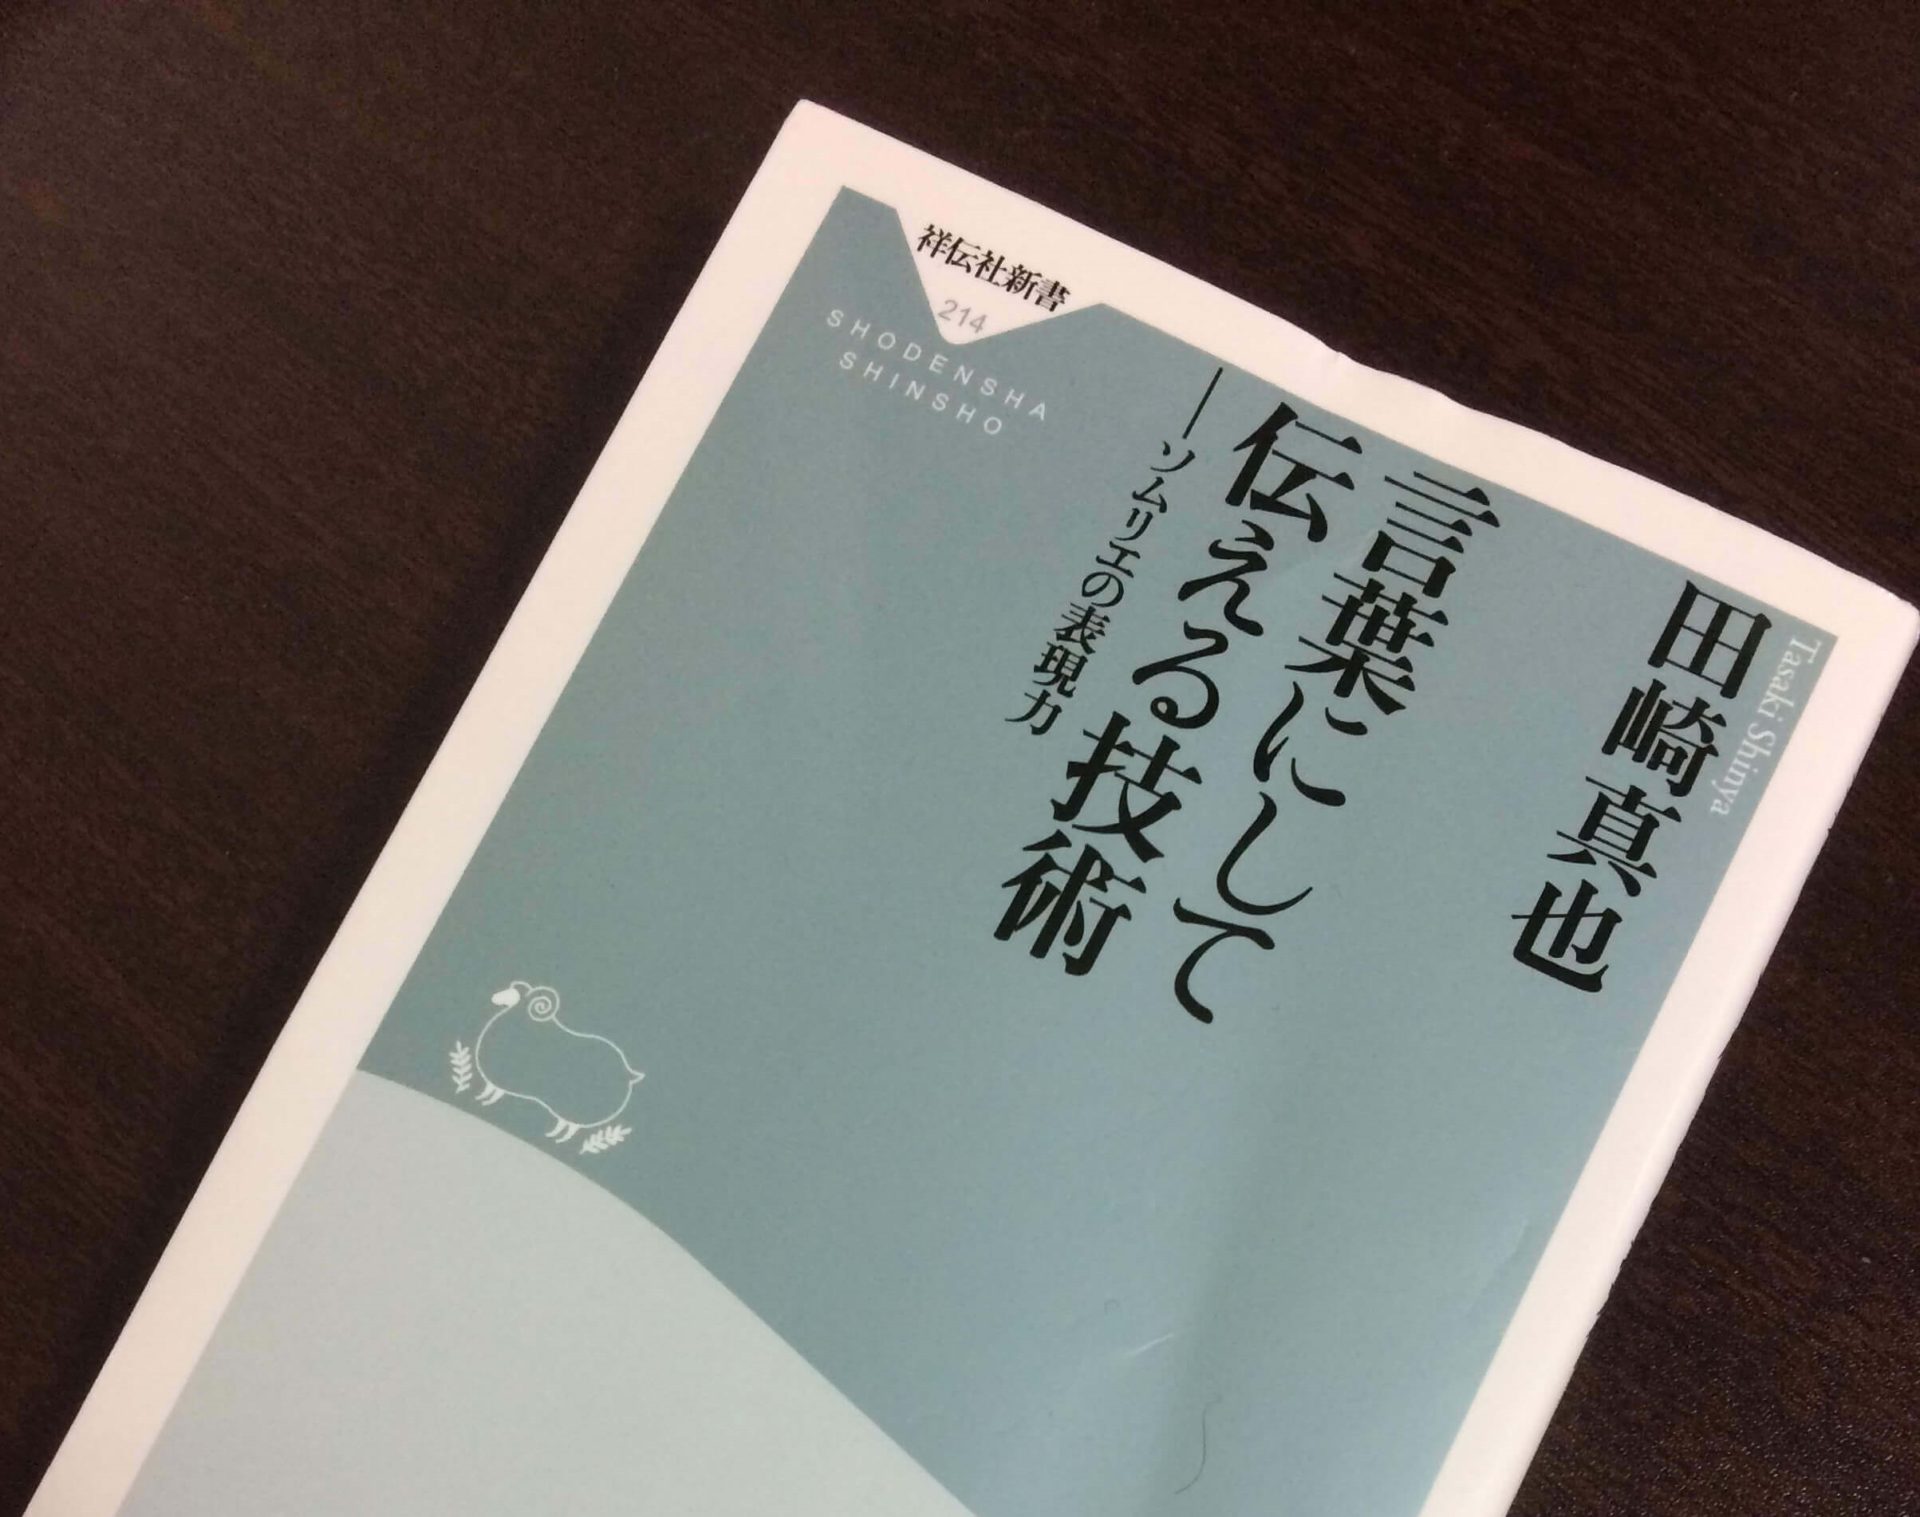 本の紹介 言葉にして伝える技術ーソムリエの表現力 Sushi Sakana Design